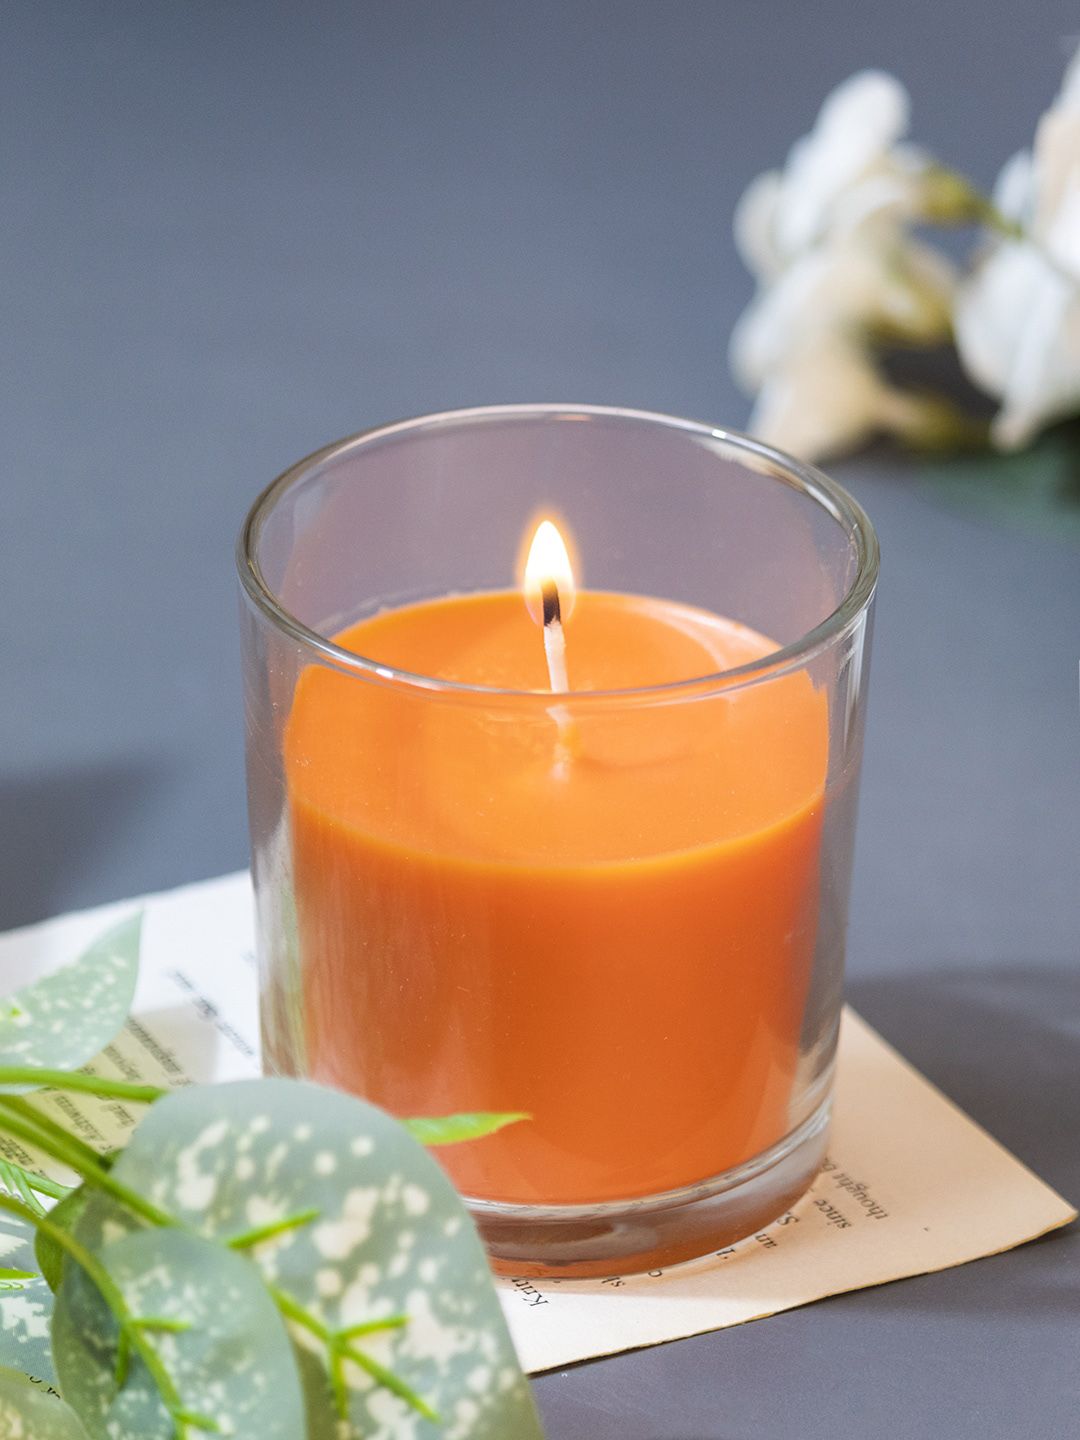 MARKET99 Orange Honey Peach Scented Candle Price in India